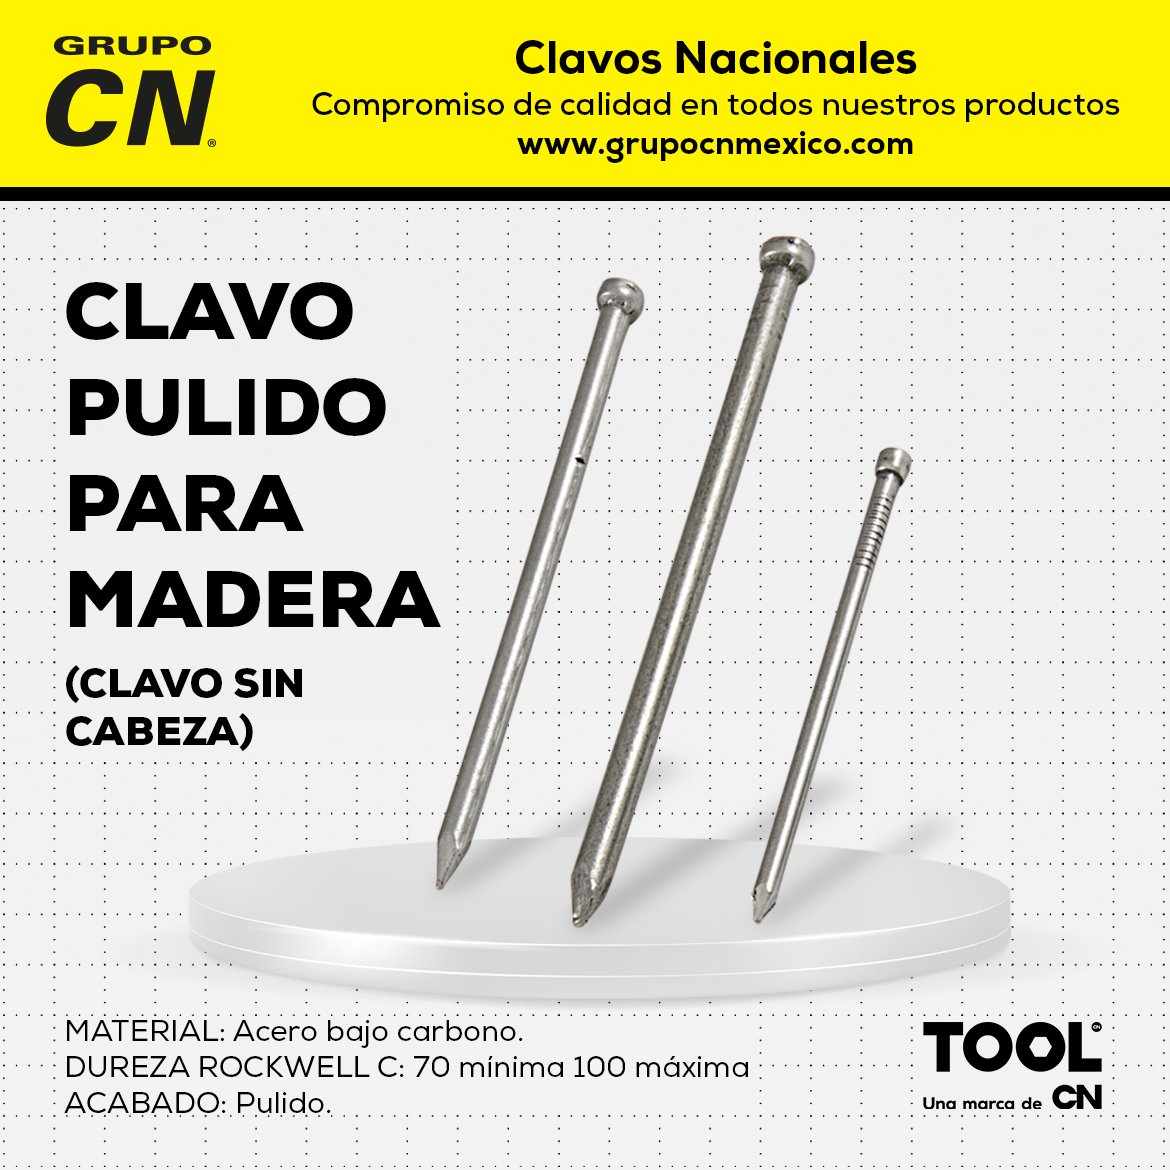 Clavo Pulido para Madera (Clavo con Cabeza) - Clavos Nacionales CN